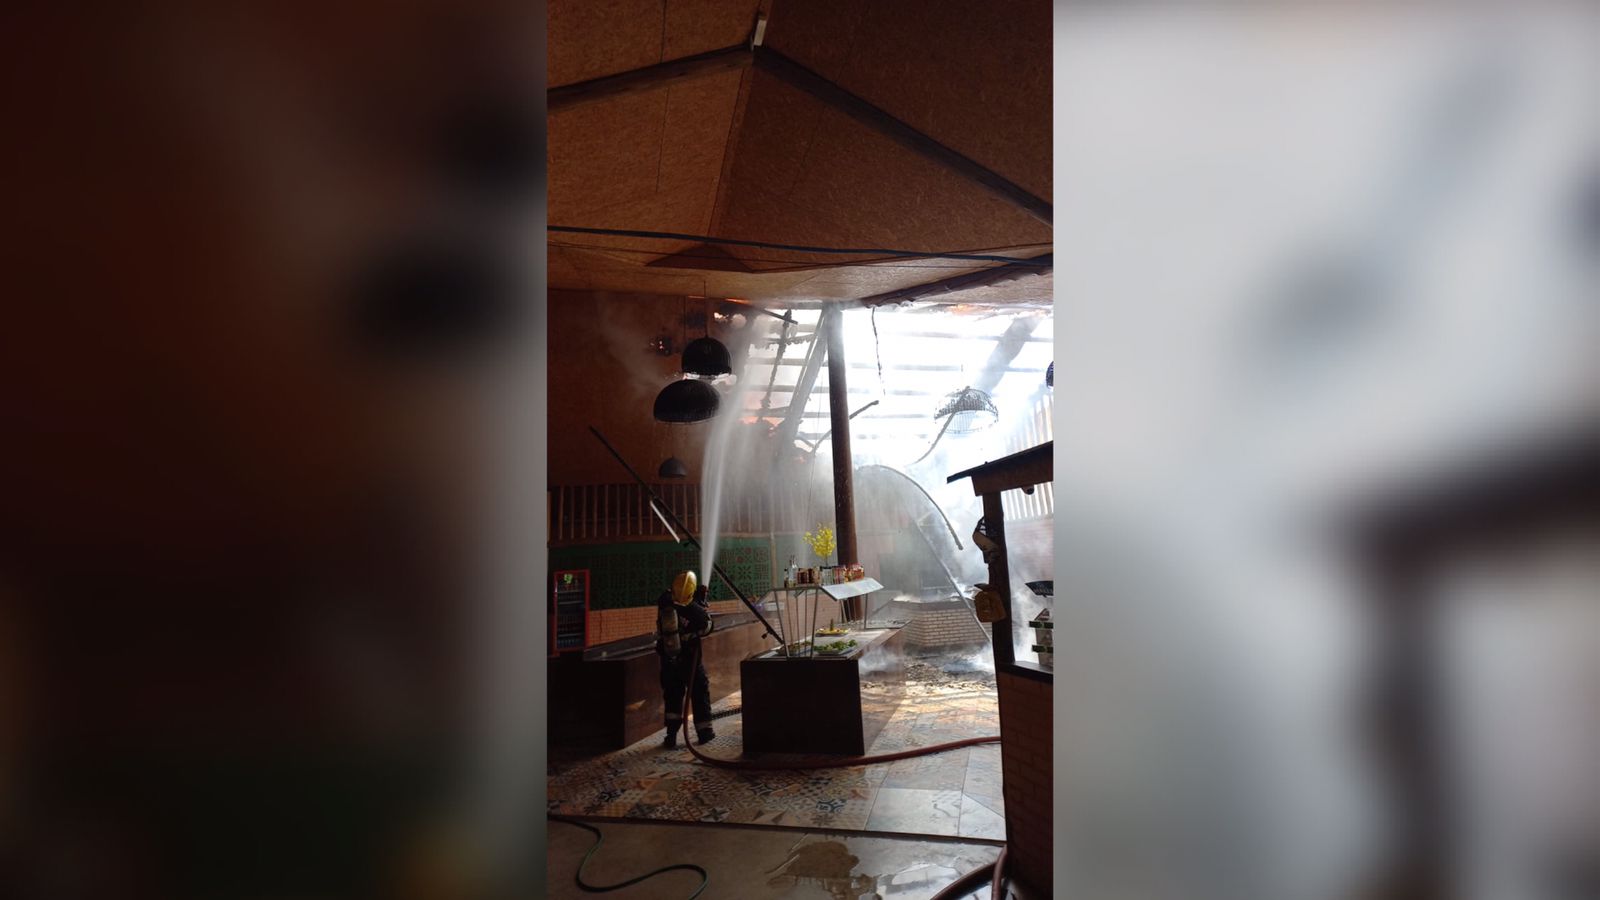 Bombeiros combatem incêndio em restaurante no Centro de Luziânia